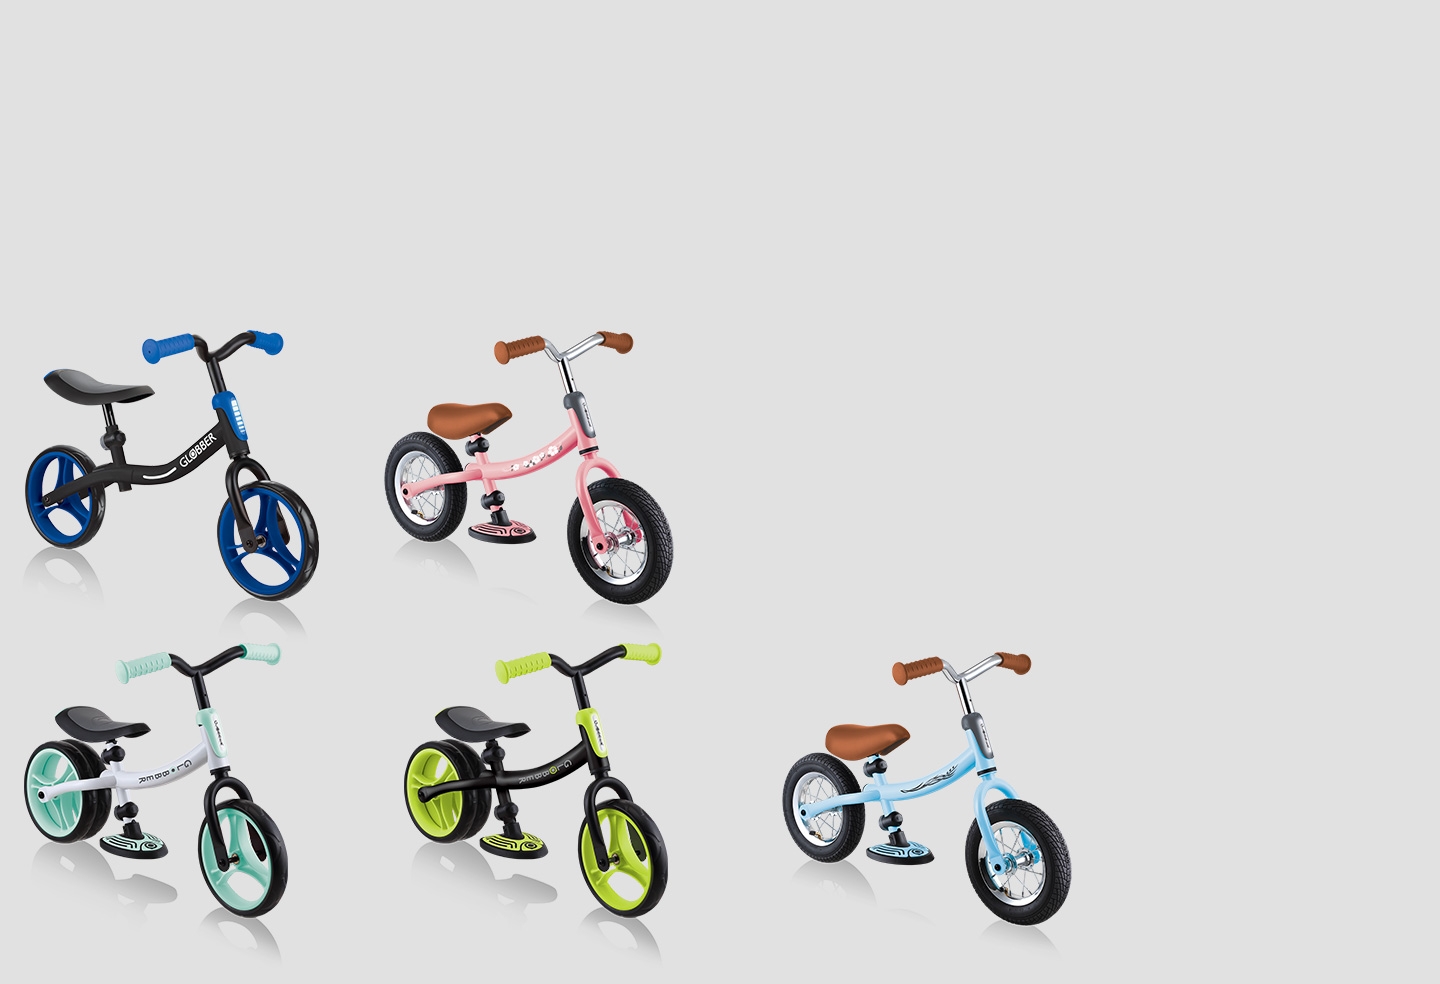 Titolo: Una bicicletta senza pedali disponibile in una vasta gamma di stili e di colori.